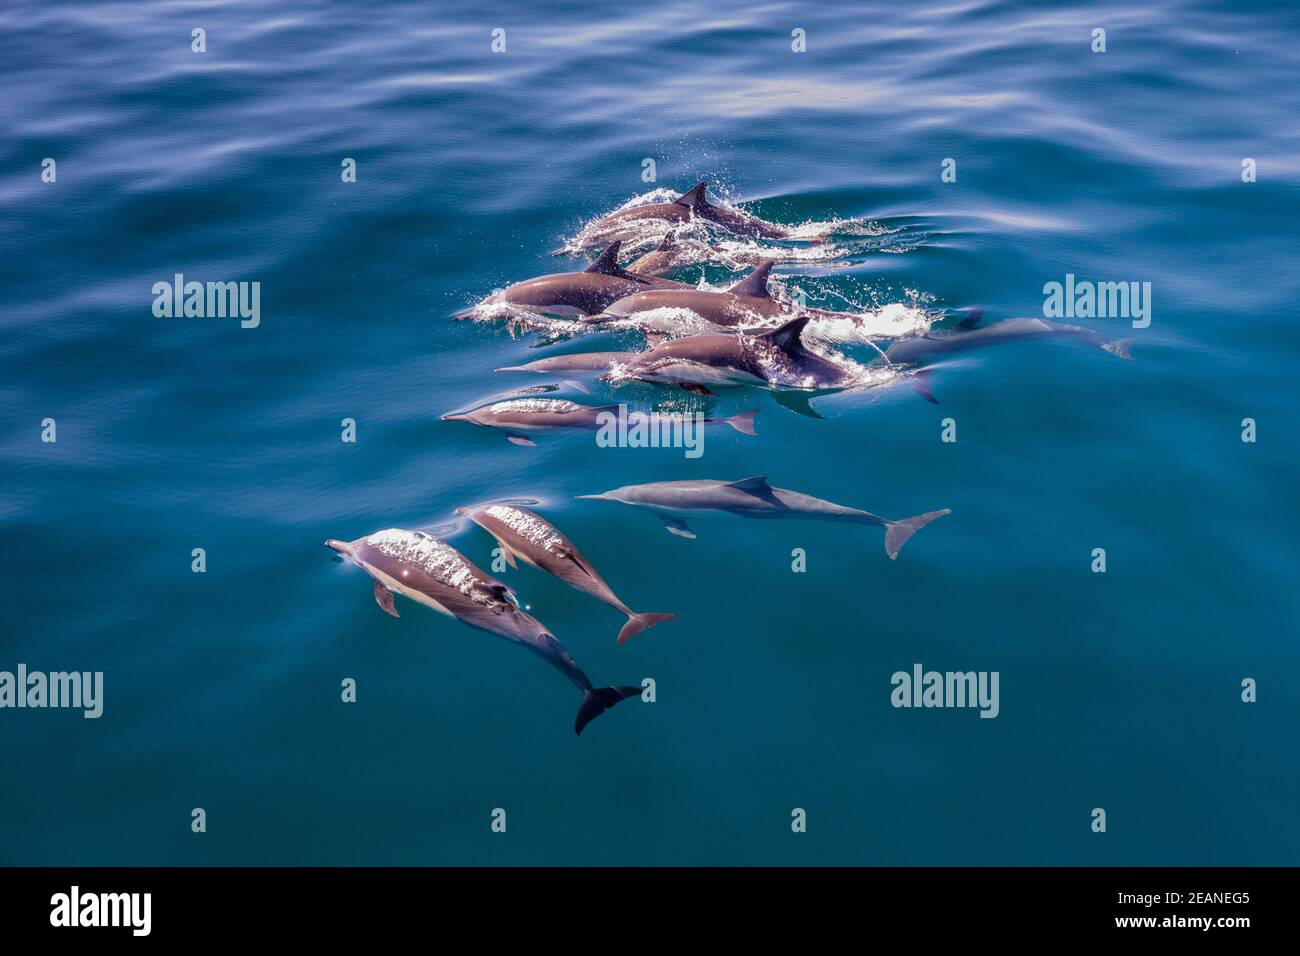 Vaina de delfín común de pico largo (Delphinus capensis), superficie, los Islotes, Baja California Sur, México, América del Norte Foto de stock